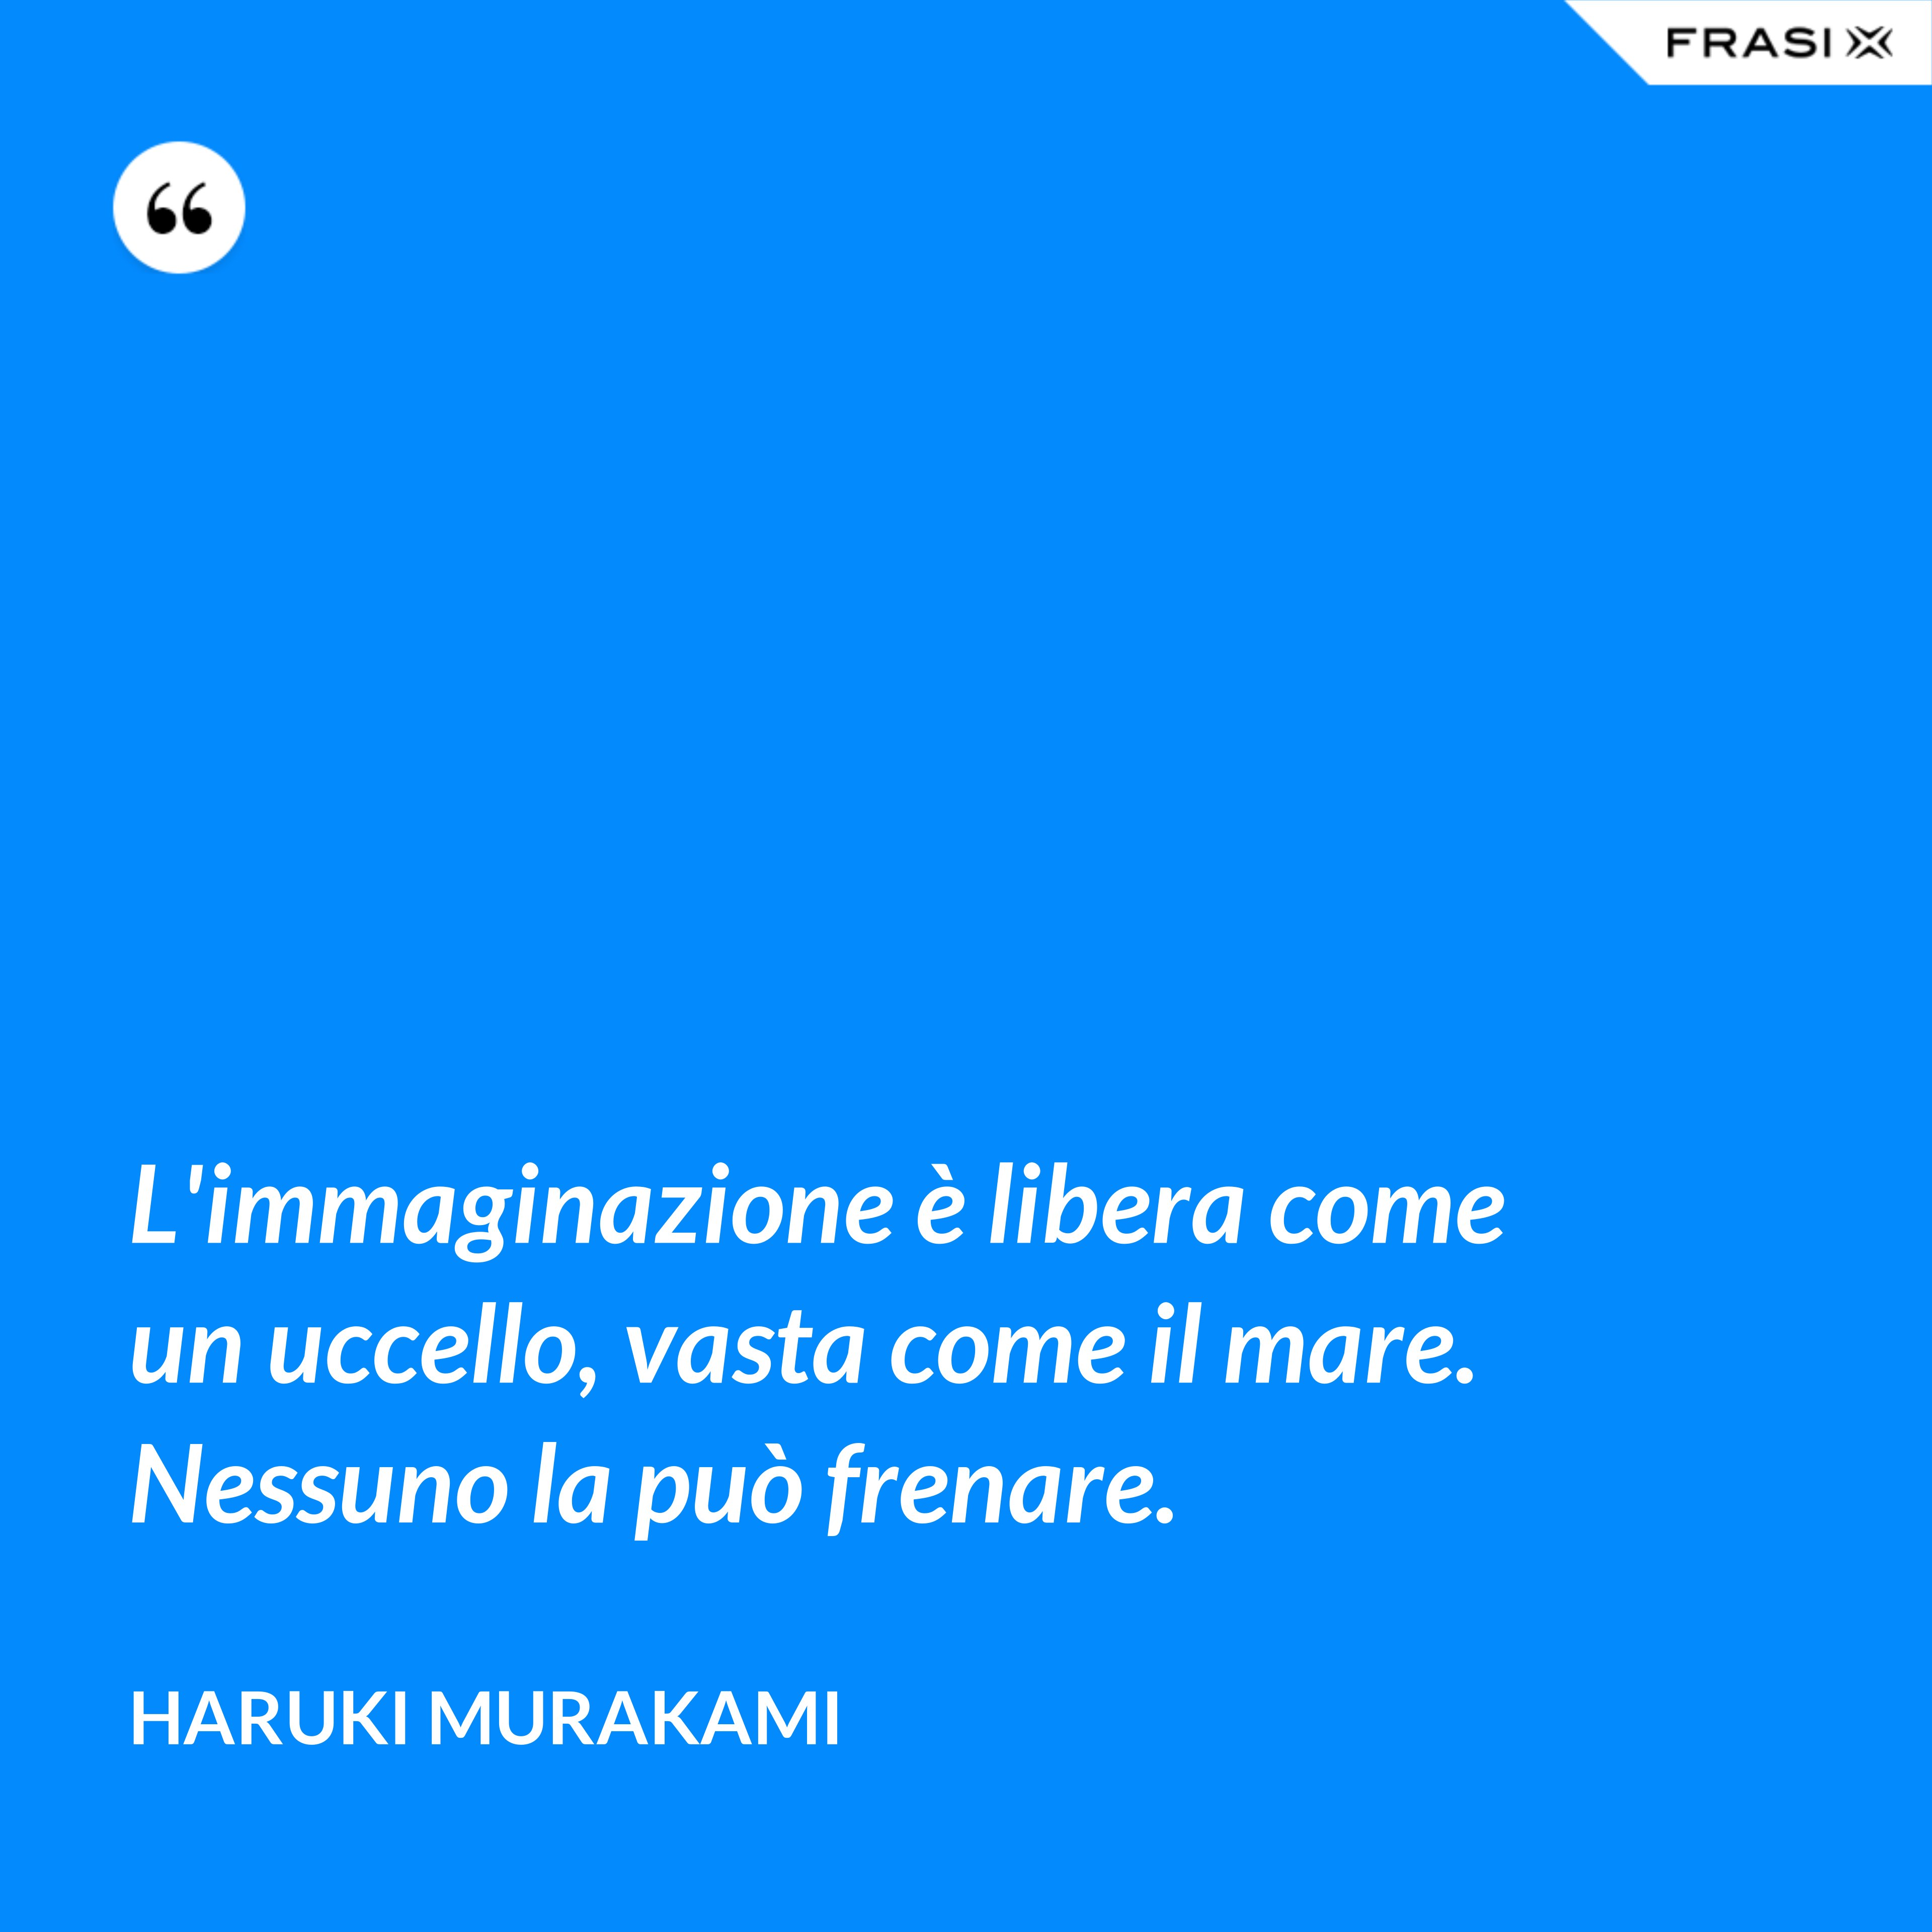 L'immaginazione è libera come un uccello, vasta come il mare. Nessuno la può frenare. - Haruki Murakami